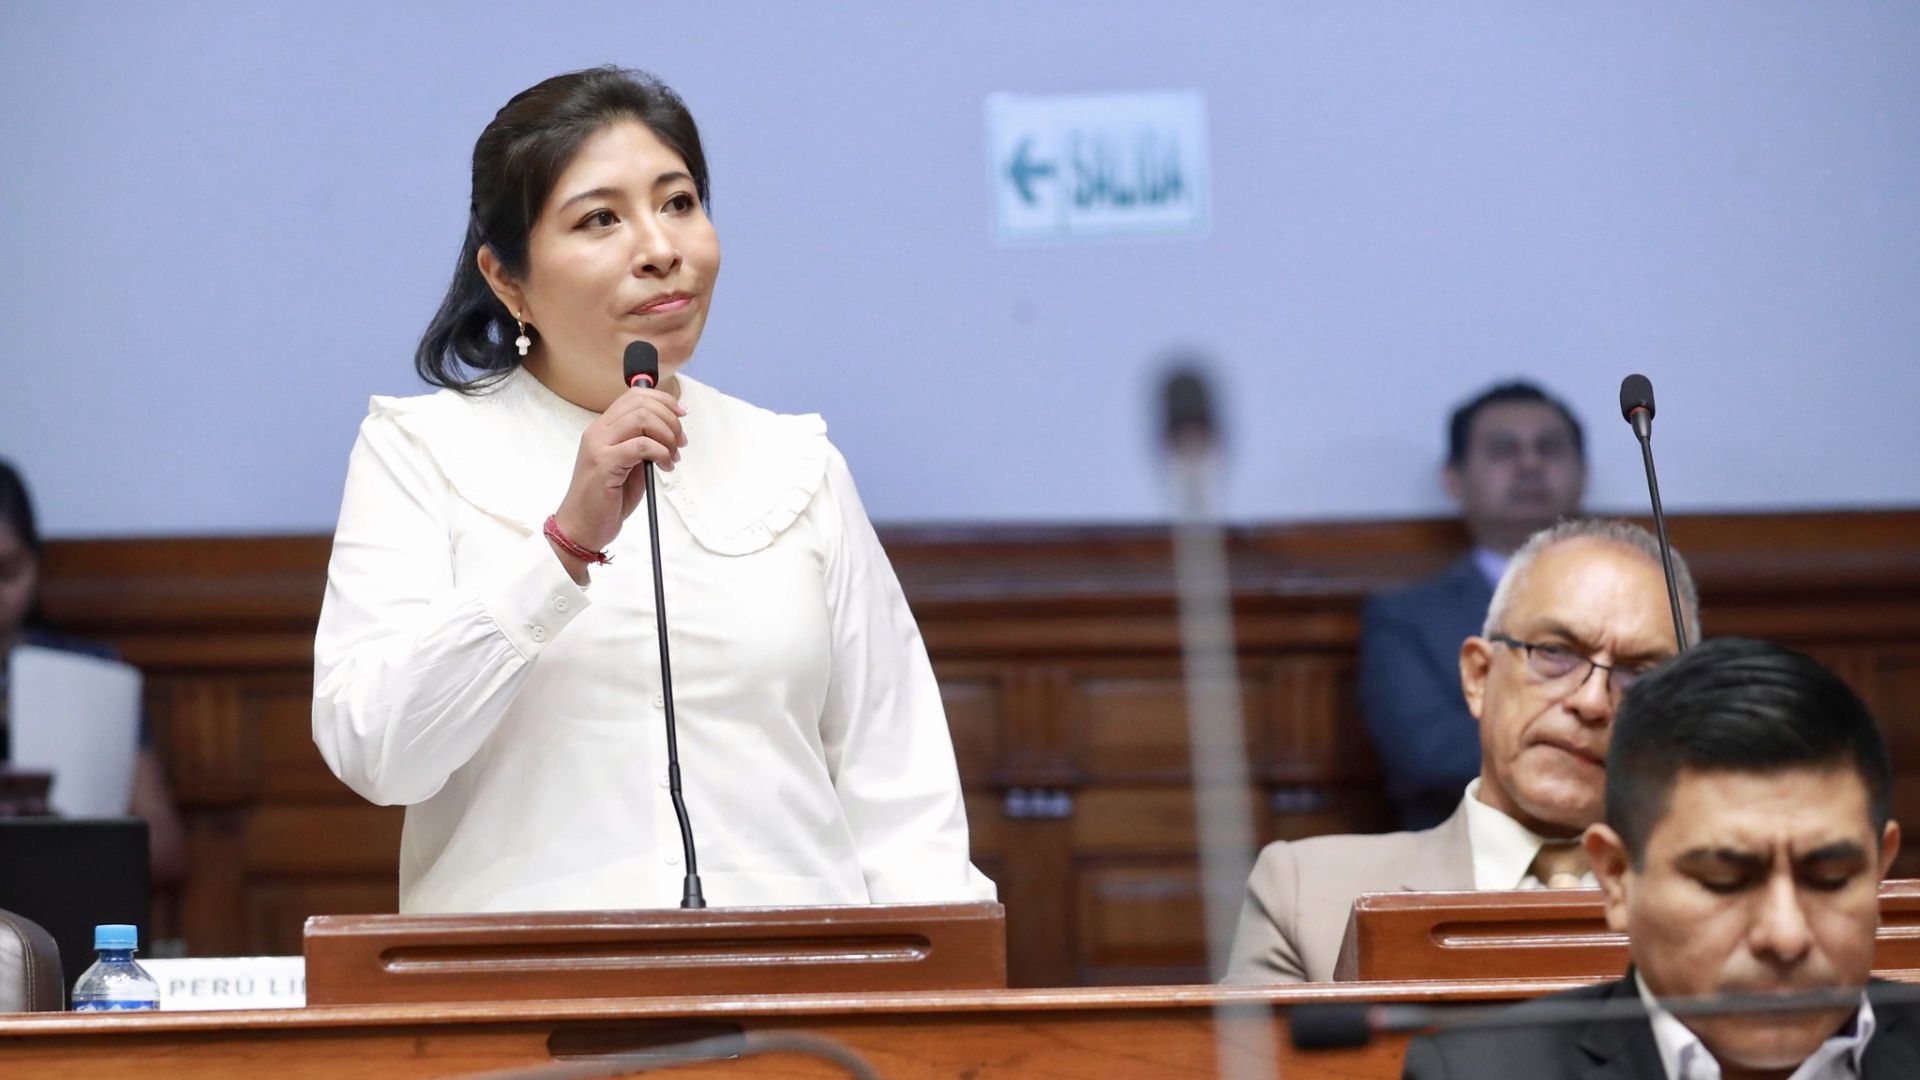 Betssy Chávez pide variar pedido de caución en su contra de 100 mil a 10 mil soles impuesta por el PJ